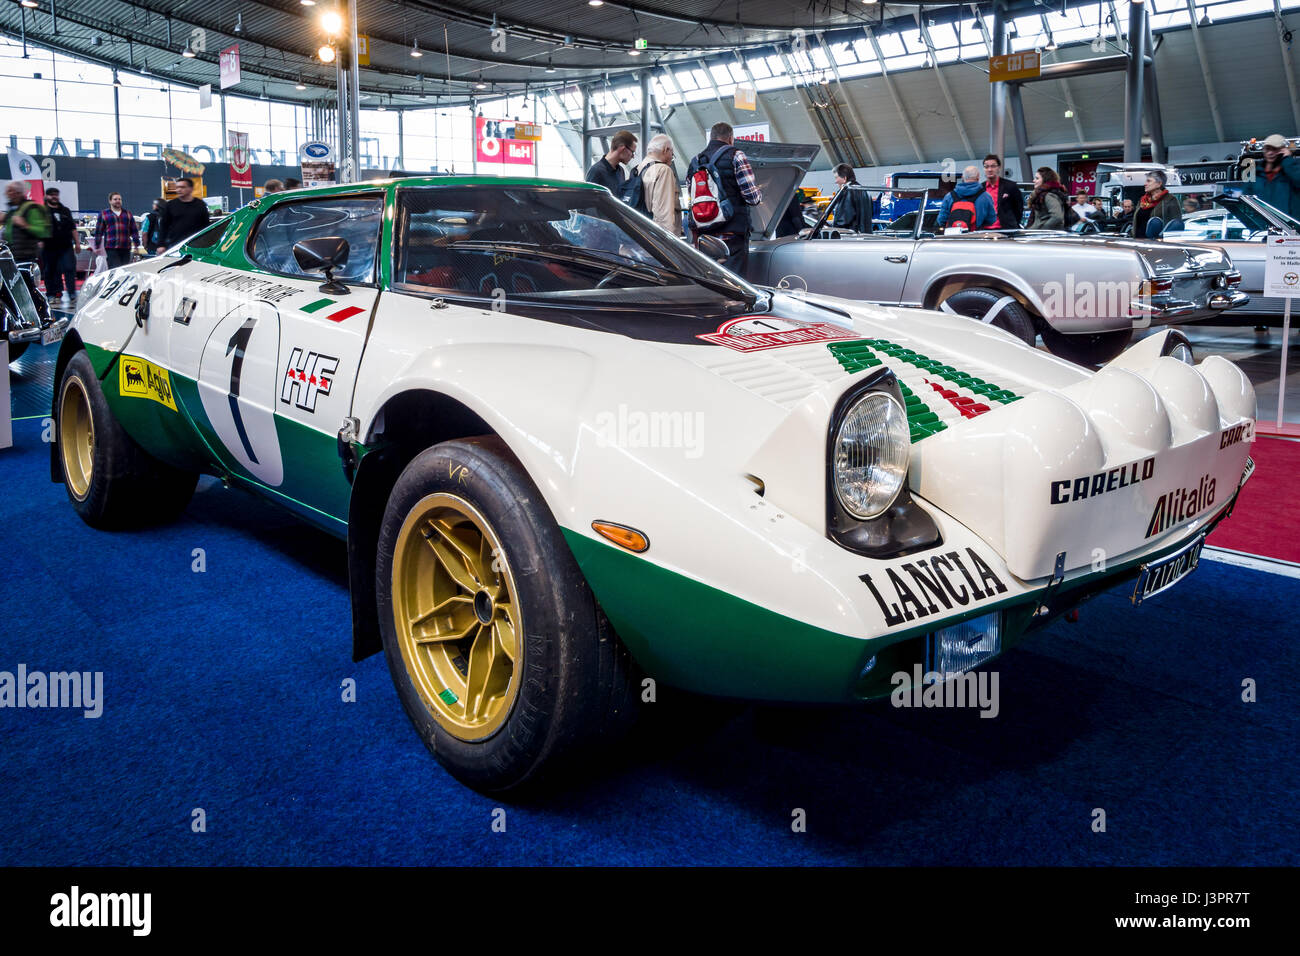 STUTTGART, ALLEMAGNE - Mars 03, 2017 : voiture de rallye et de sport Lancia Stratos HF (Tipo 829), 1975. Plus grand d'Europe Exposition de voitures classiques 'RETRO' classiques Banque D'Images